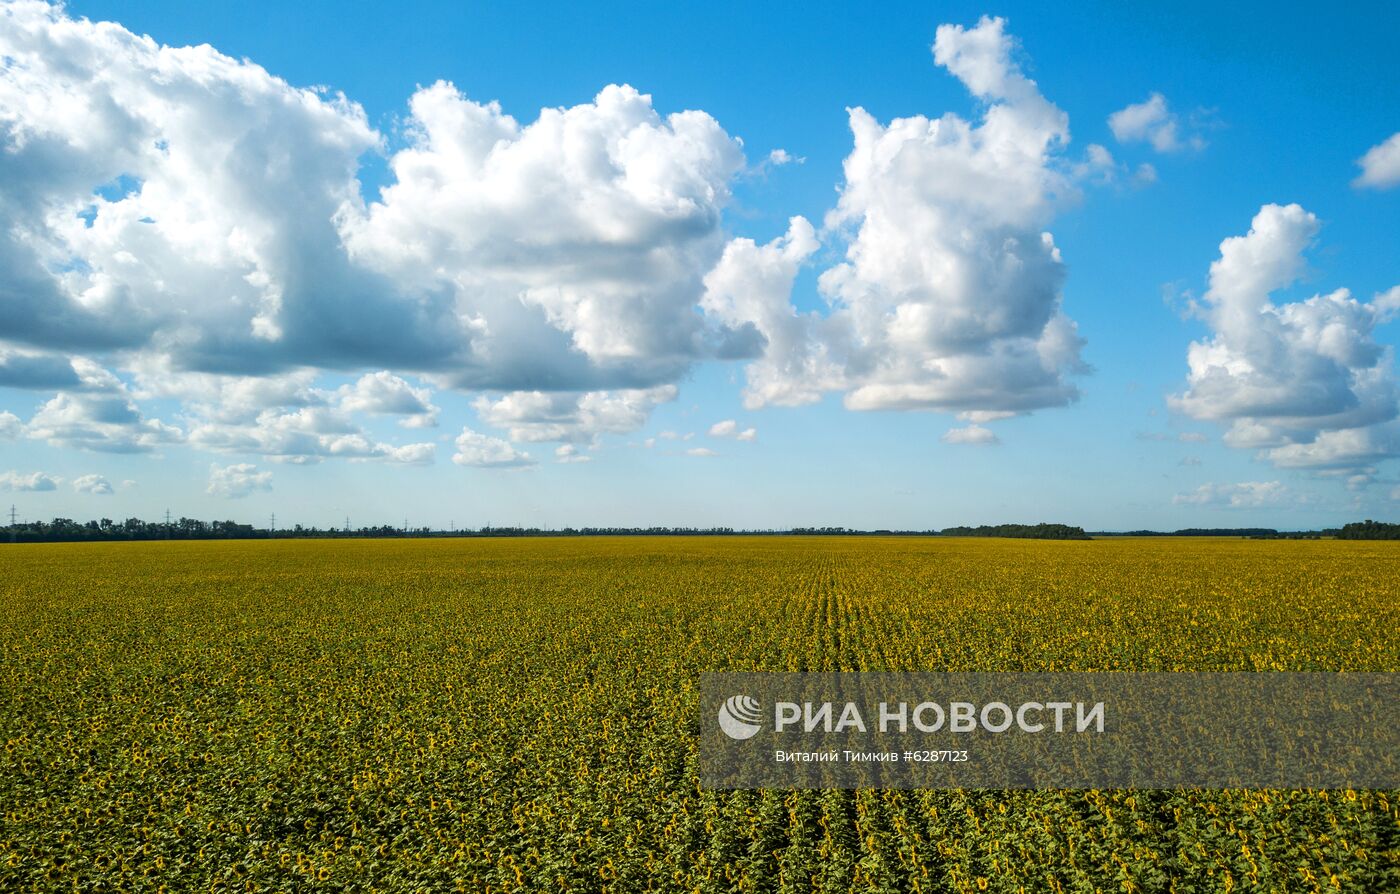 Поля с подсолнухами в Краснодарском крае